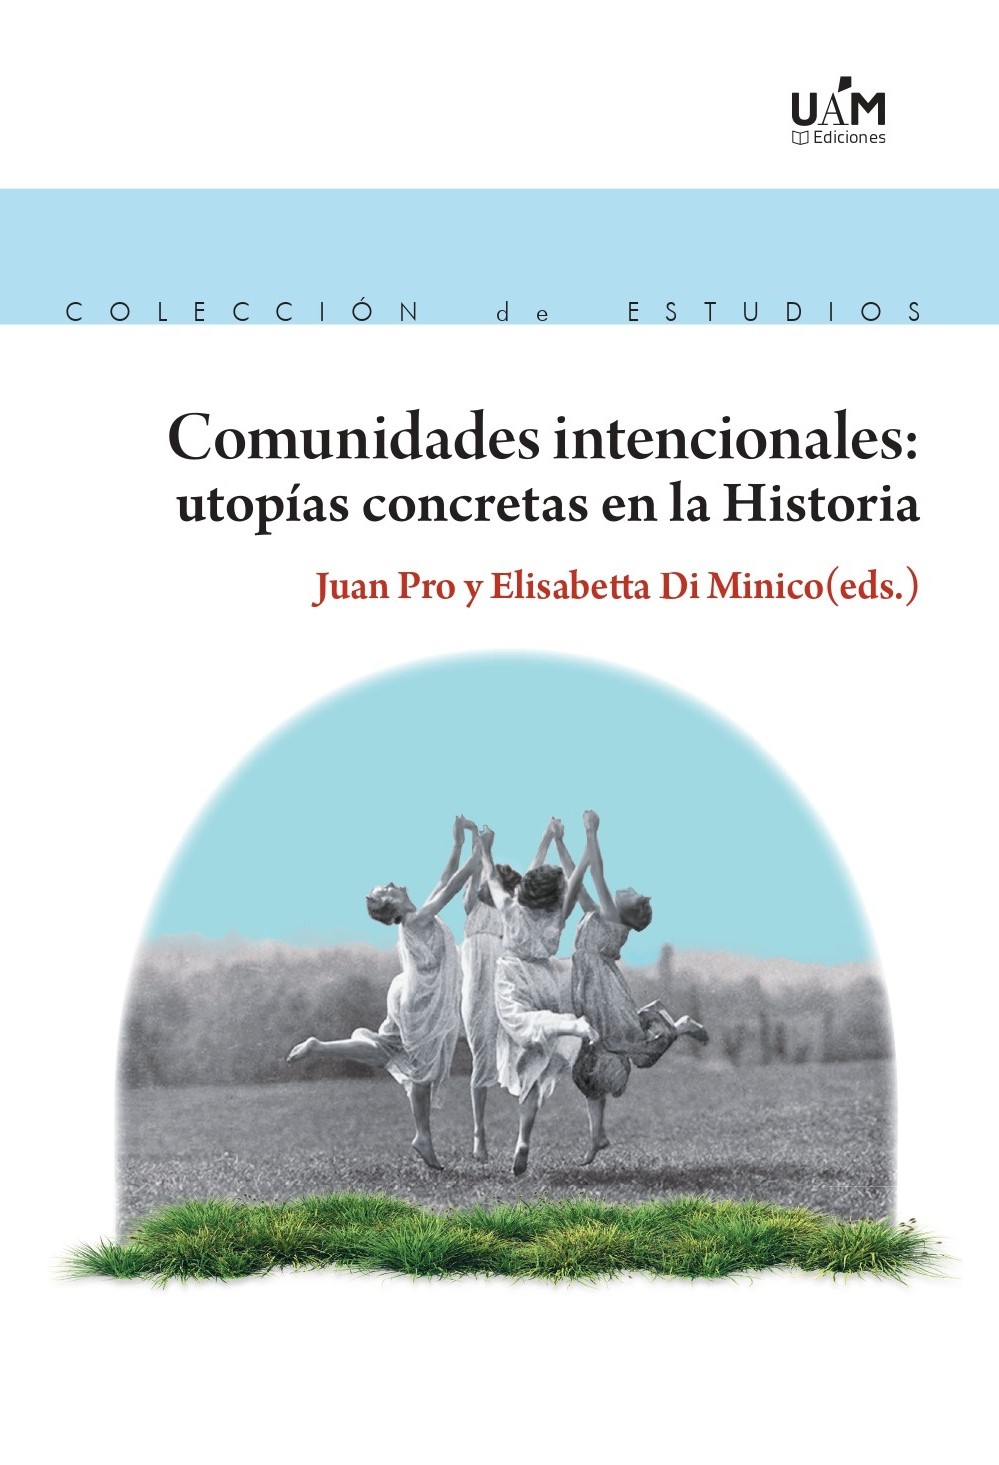 Juan Pro (EEHA-IH) edita un libro colectivo sobre las comunidades alternativas del pasado y de la actualidad.